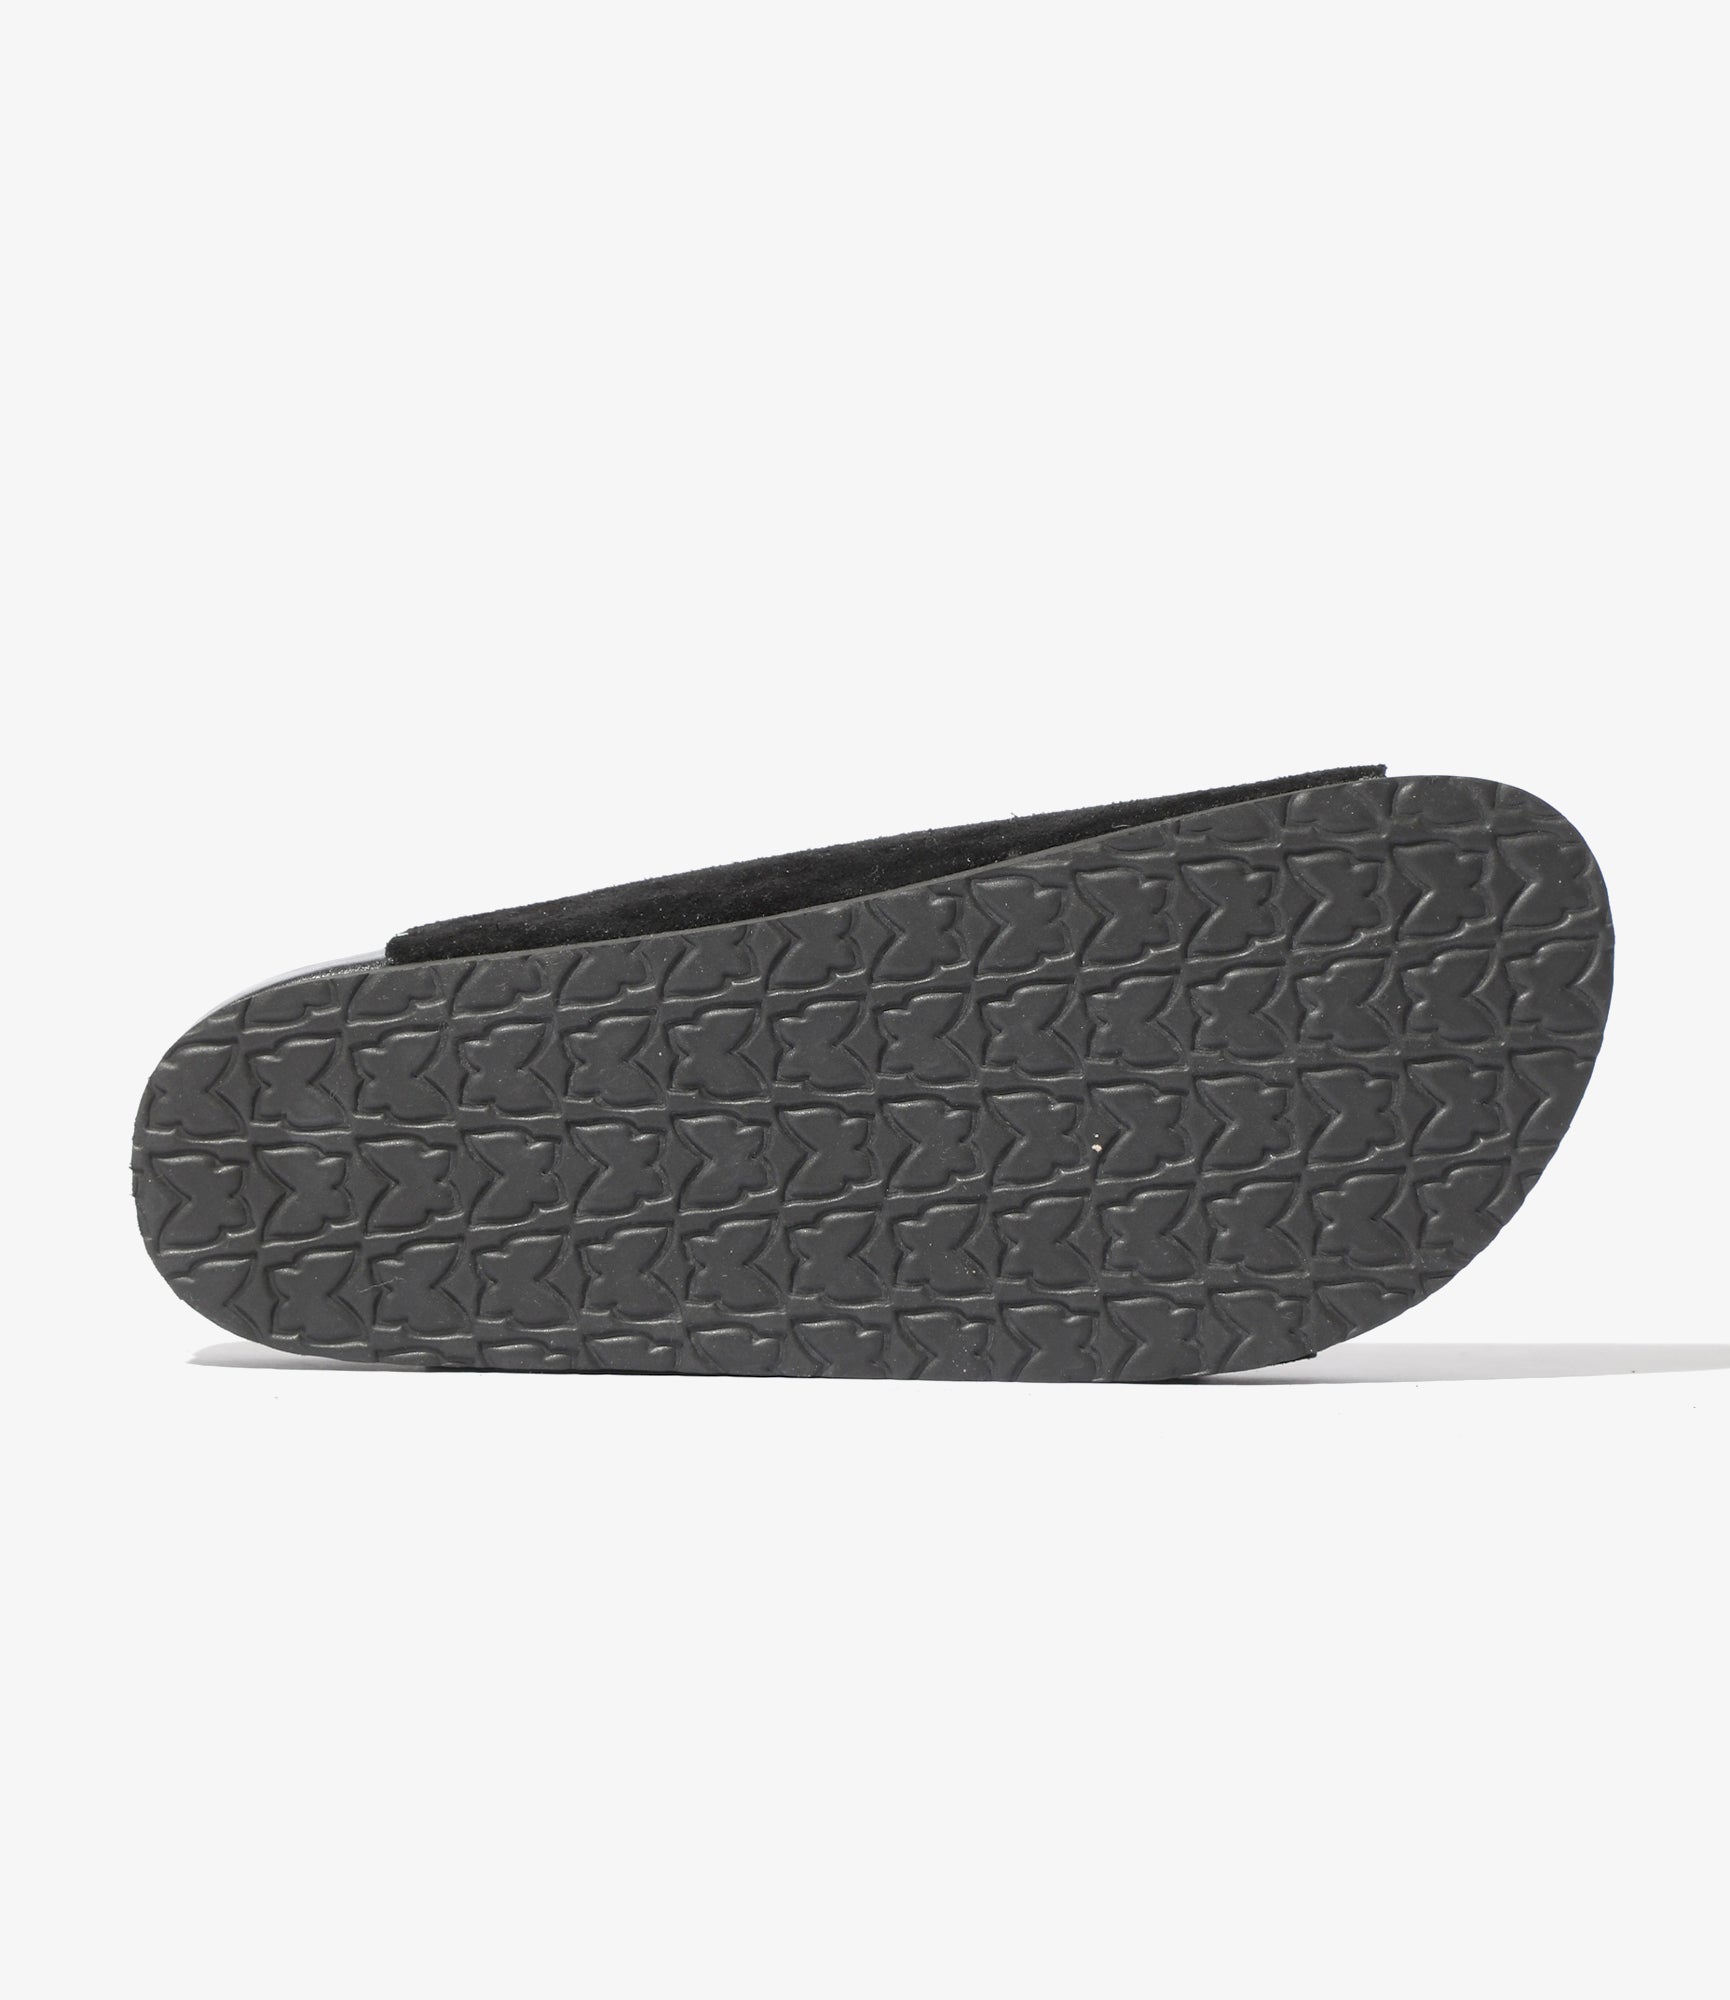 Clog Sandal - Black - Suede Leather